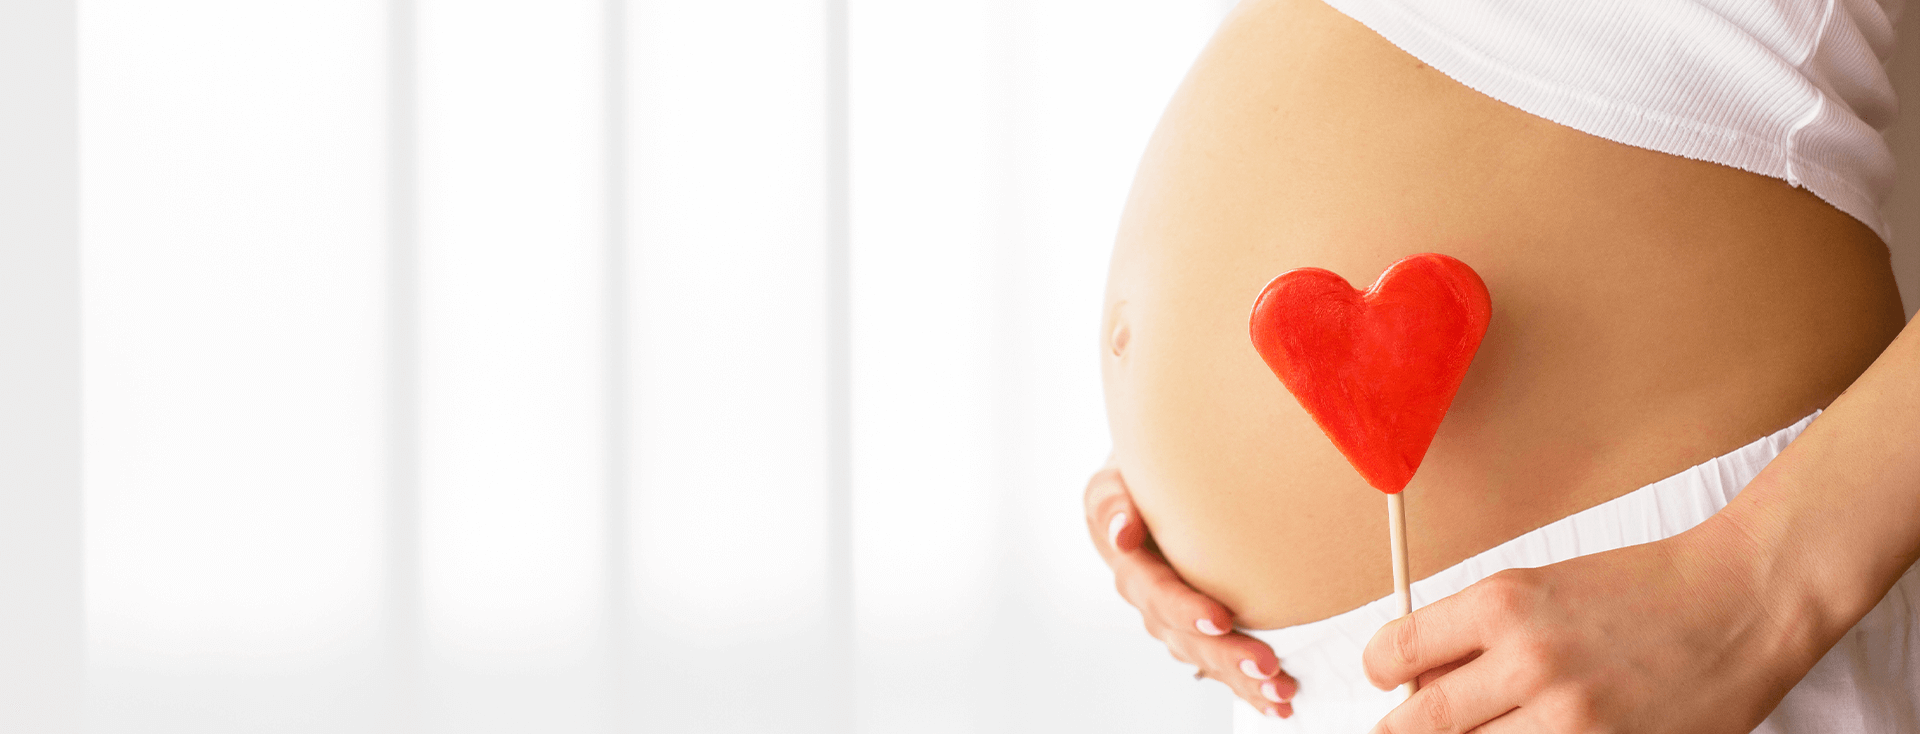 barriga de gestante segurando um enfeite de coração para representar a importância da suplementação na gravidez